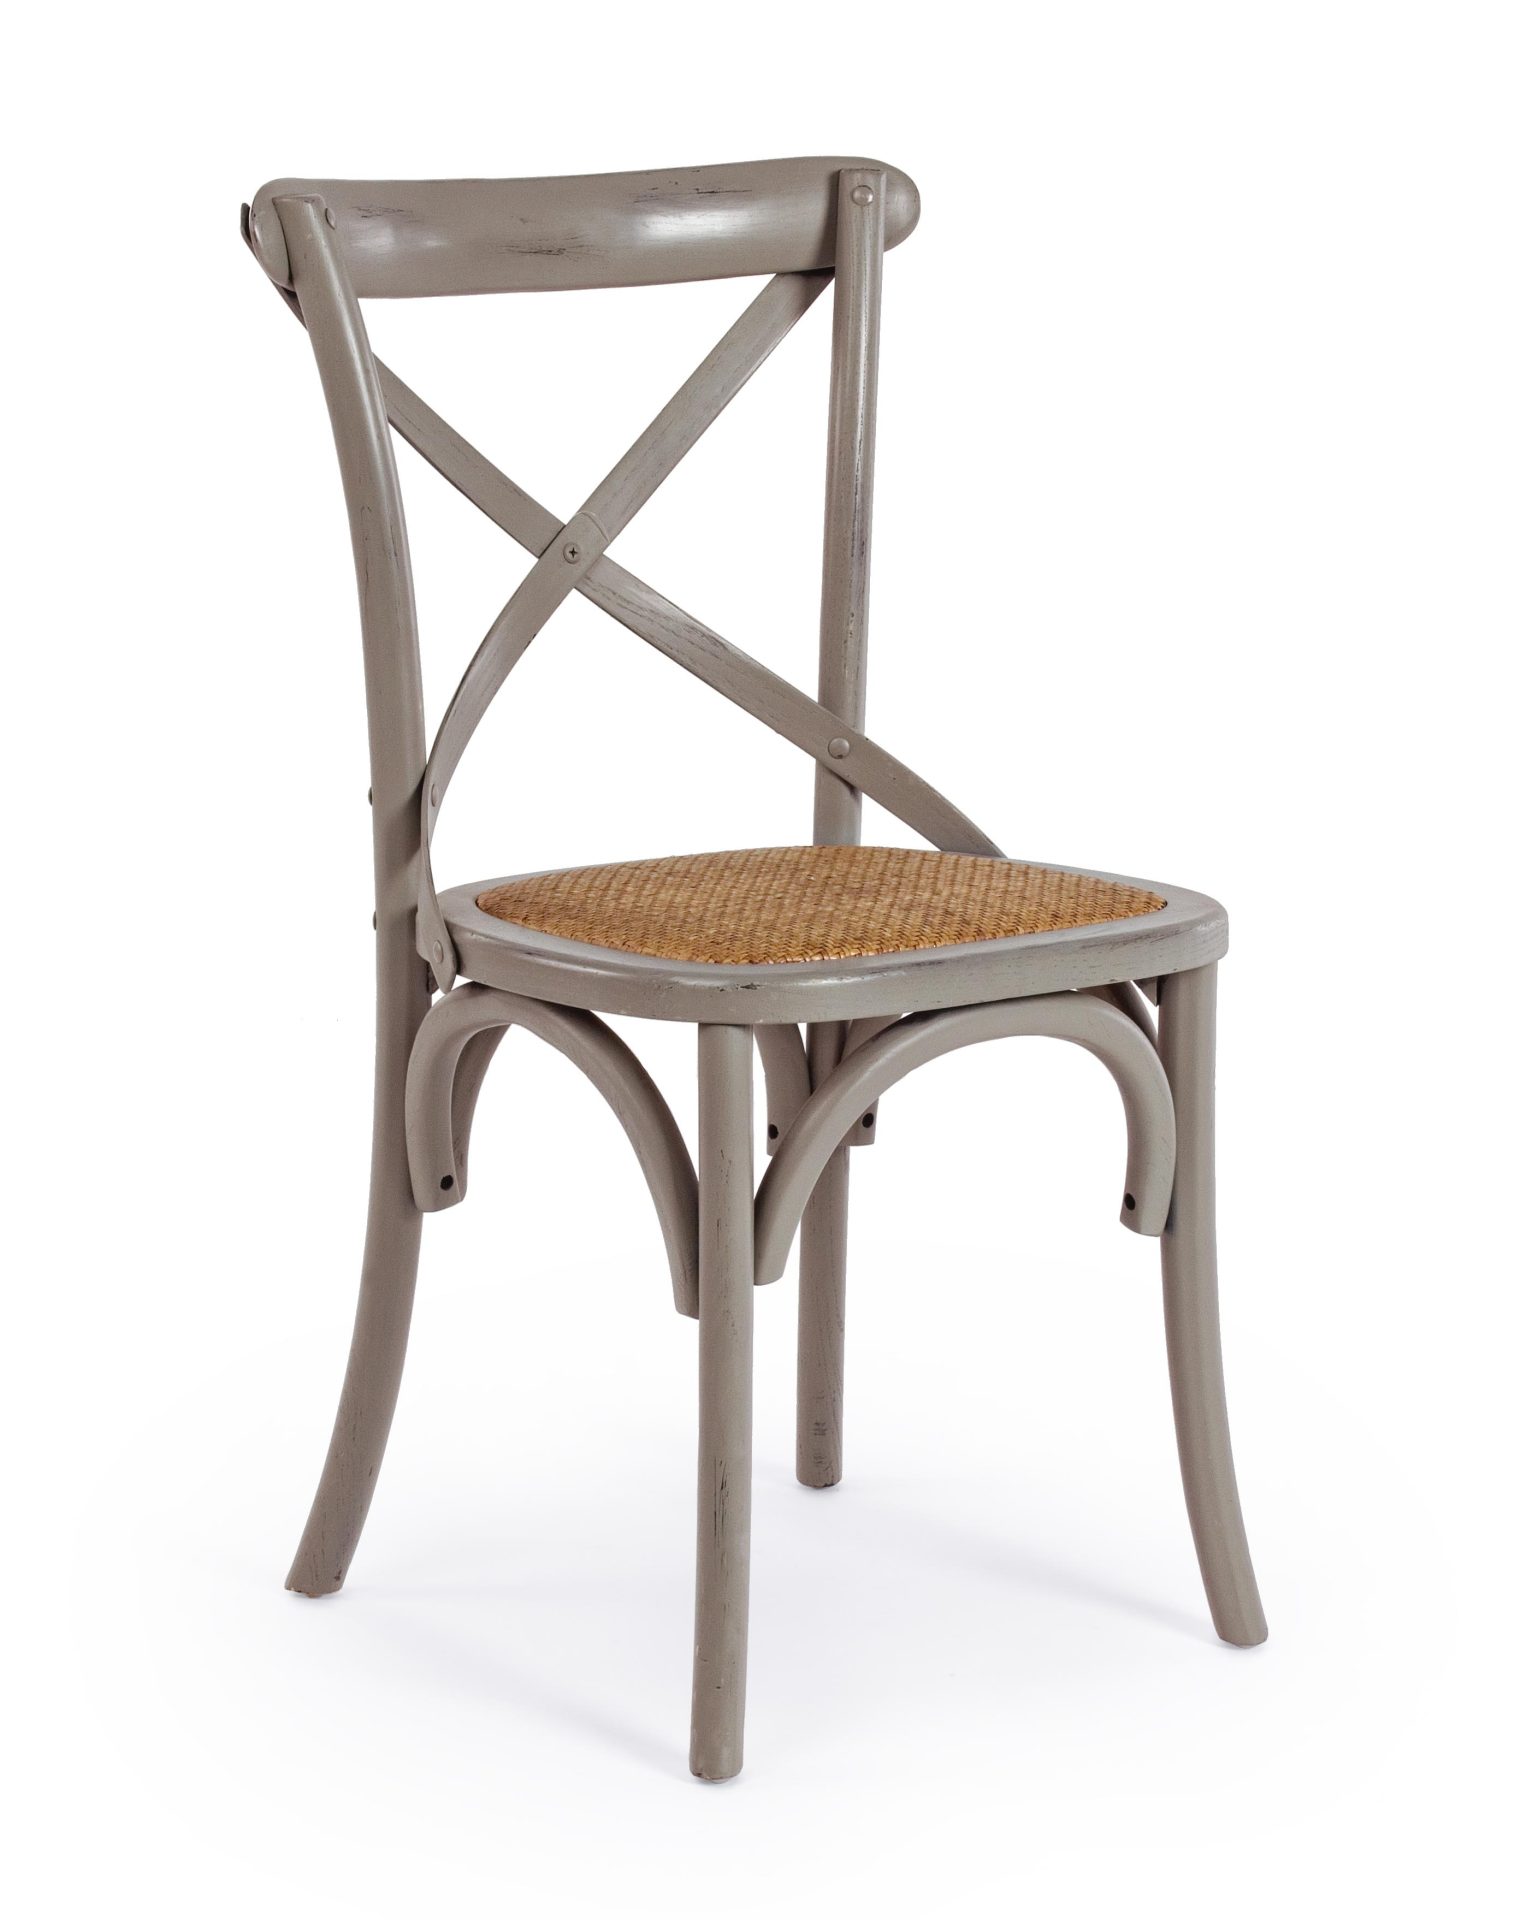 Der Stuhl Cross überzeugt mit seinem klassischen Design. Gefertigt wurde der Stuhl aus Ulmenholz, welches einen dunkelgrauen Farbton besitzt. Die Sitz- und Rückenfläche ist aus Rattan gefertigt. Die Sitzhöhe beträgt 46 cm.